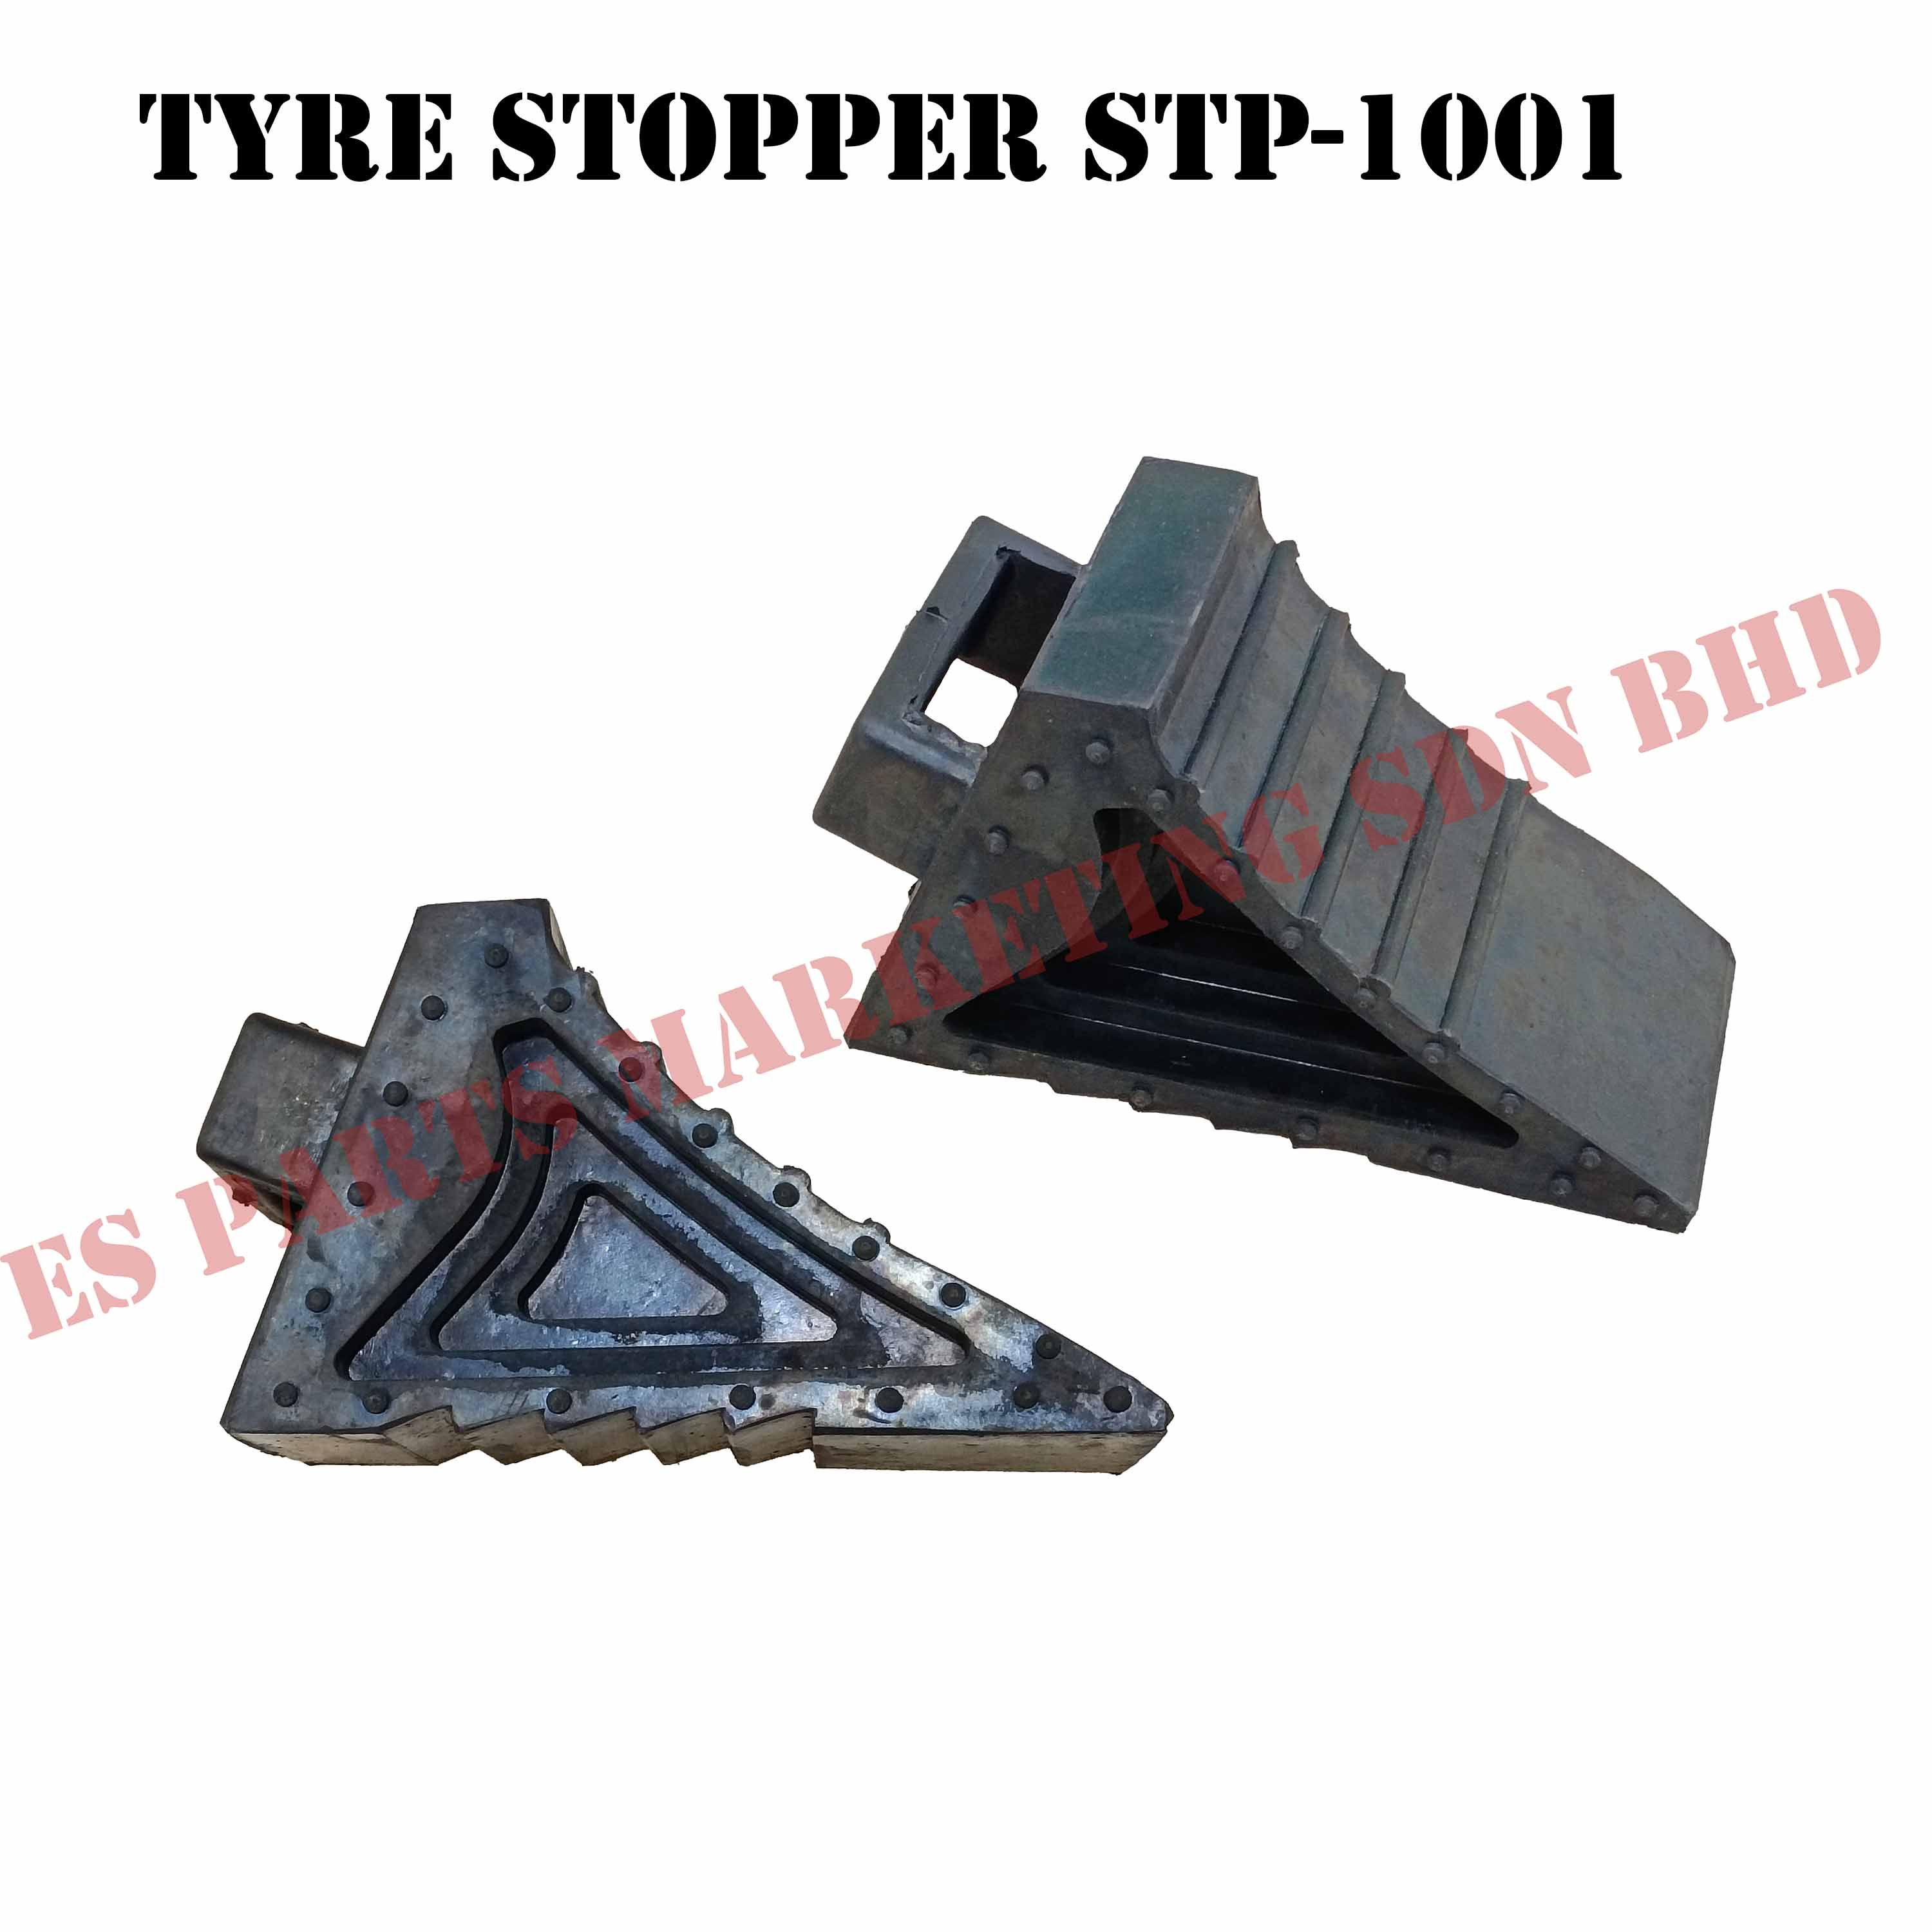 Trailer Tires Stopper STP-1001